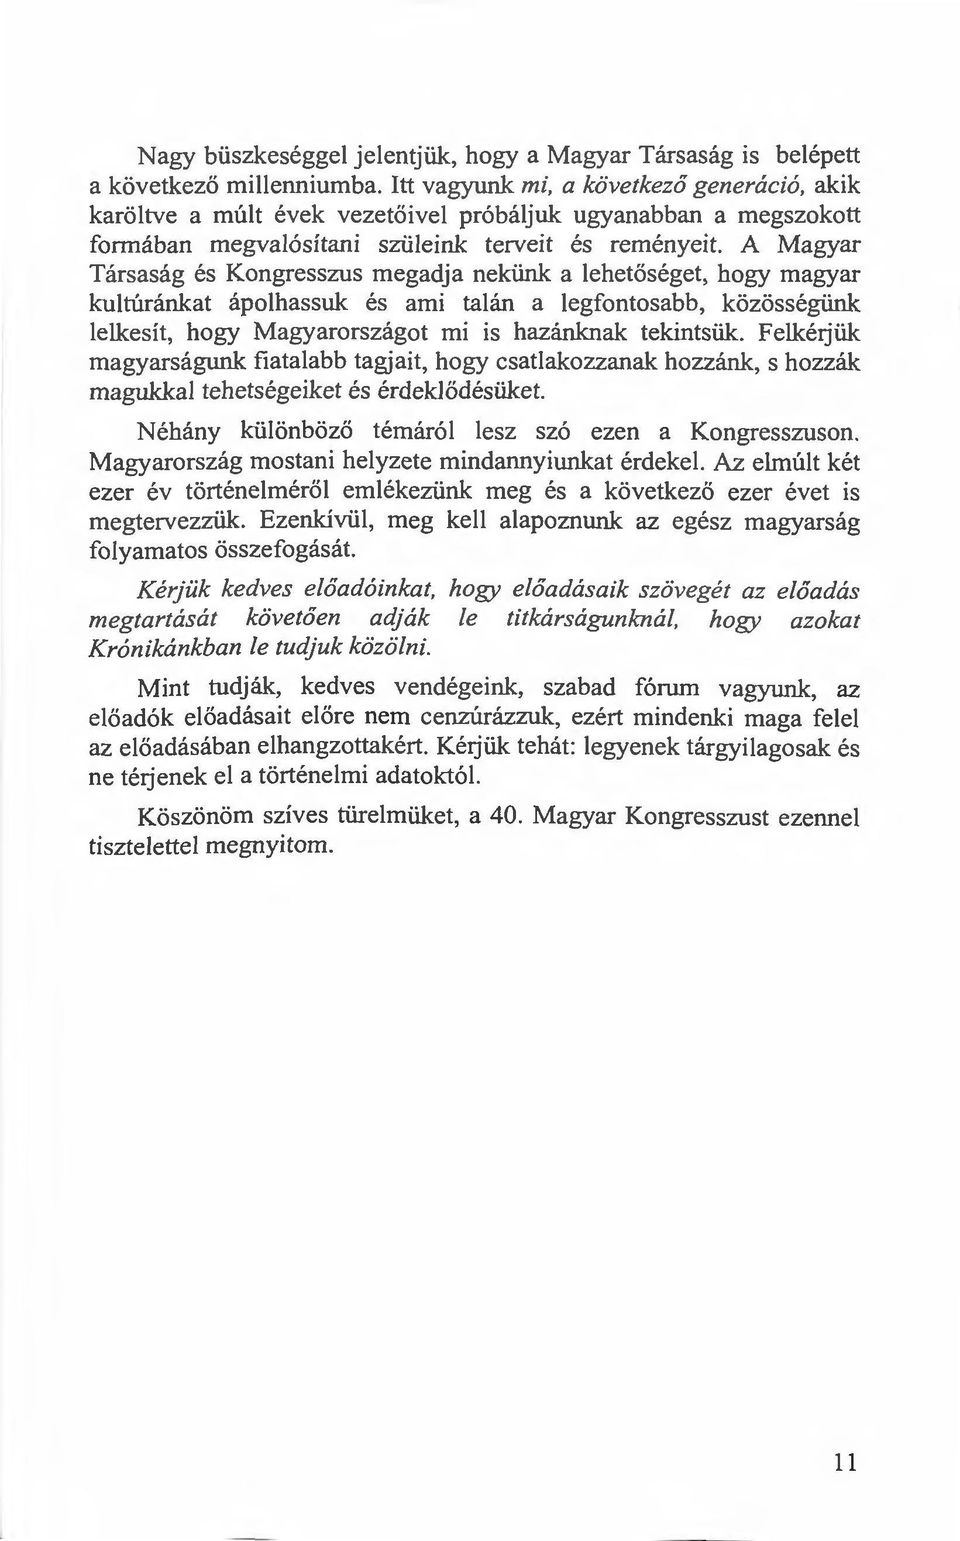 A Magyar Társaság és Kongresszus megadja nekünk a lehetőséget, hogy magyar kultúránkat ápolhassuk és ami talán a legfontosabb, kőzösségünk lelkesít, hogy Magyarországot mi is hazánknak tekintsük.